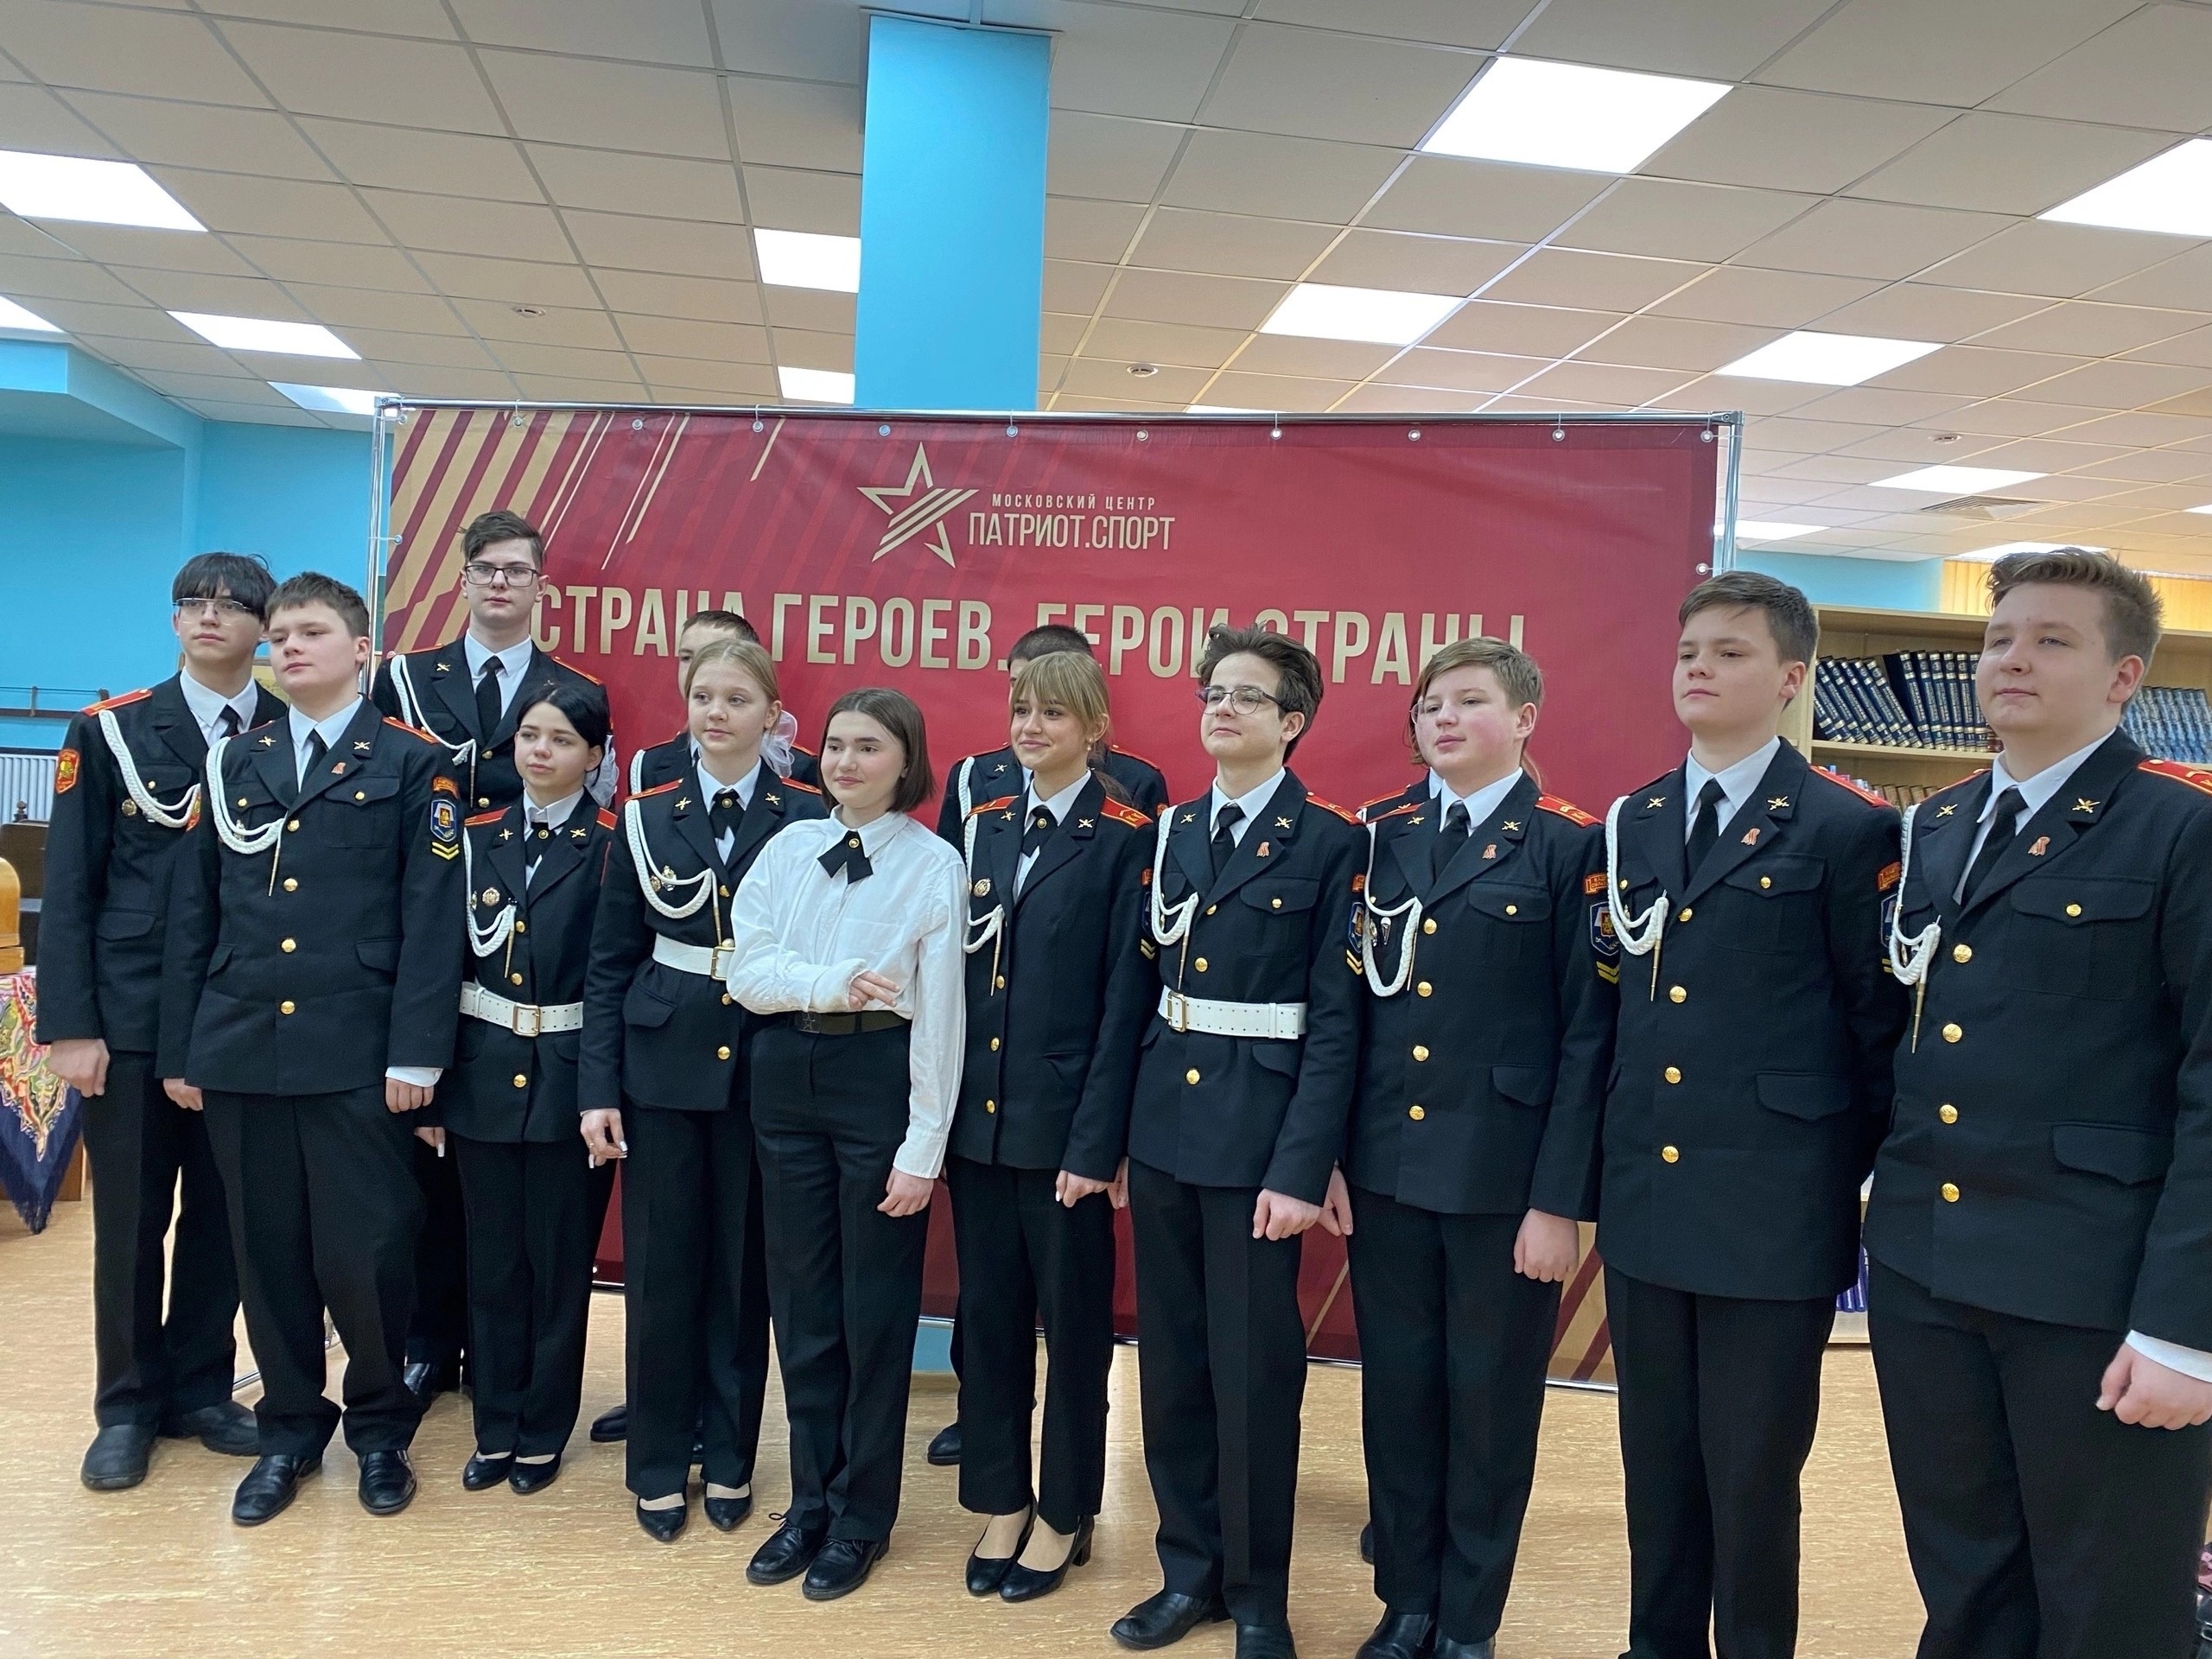 Ученики школы № 2075 посетили выставку «Страна Героев. Герои Страны».